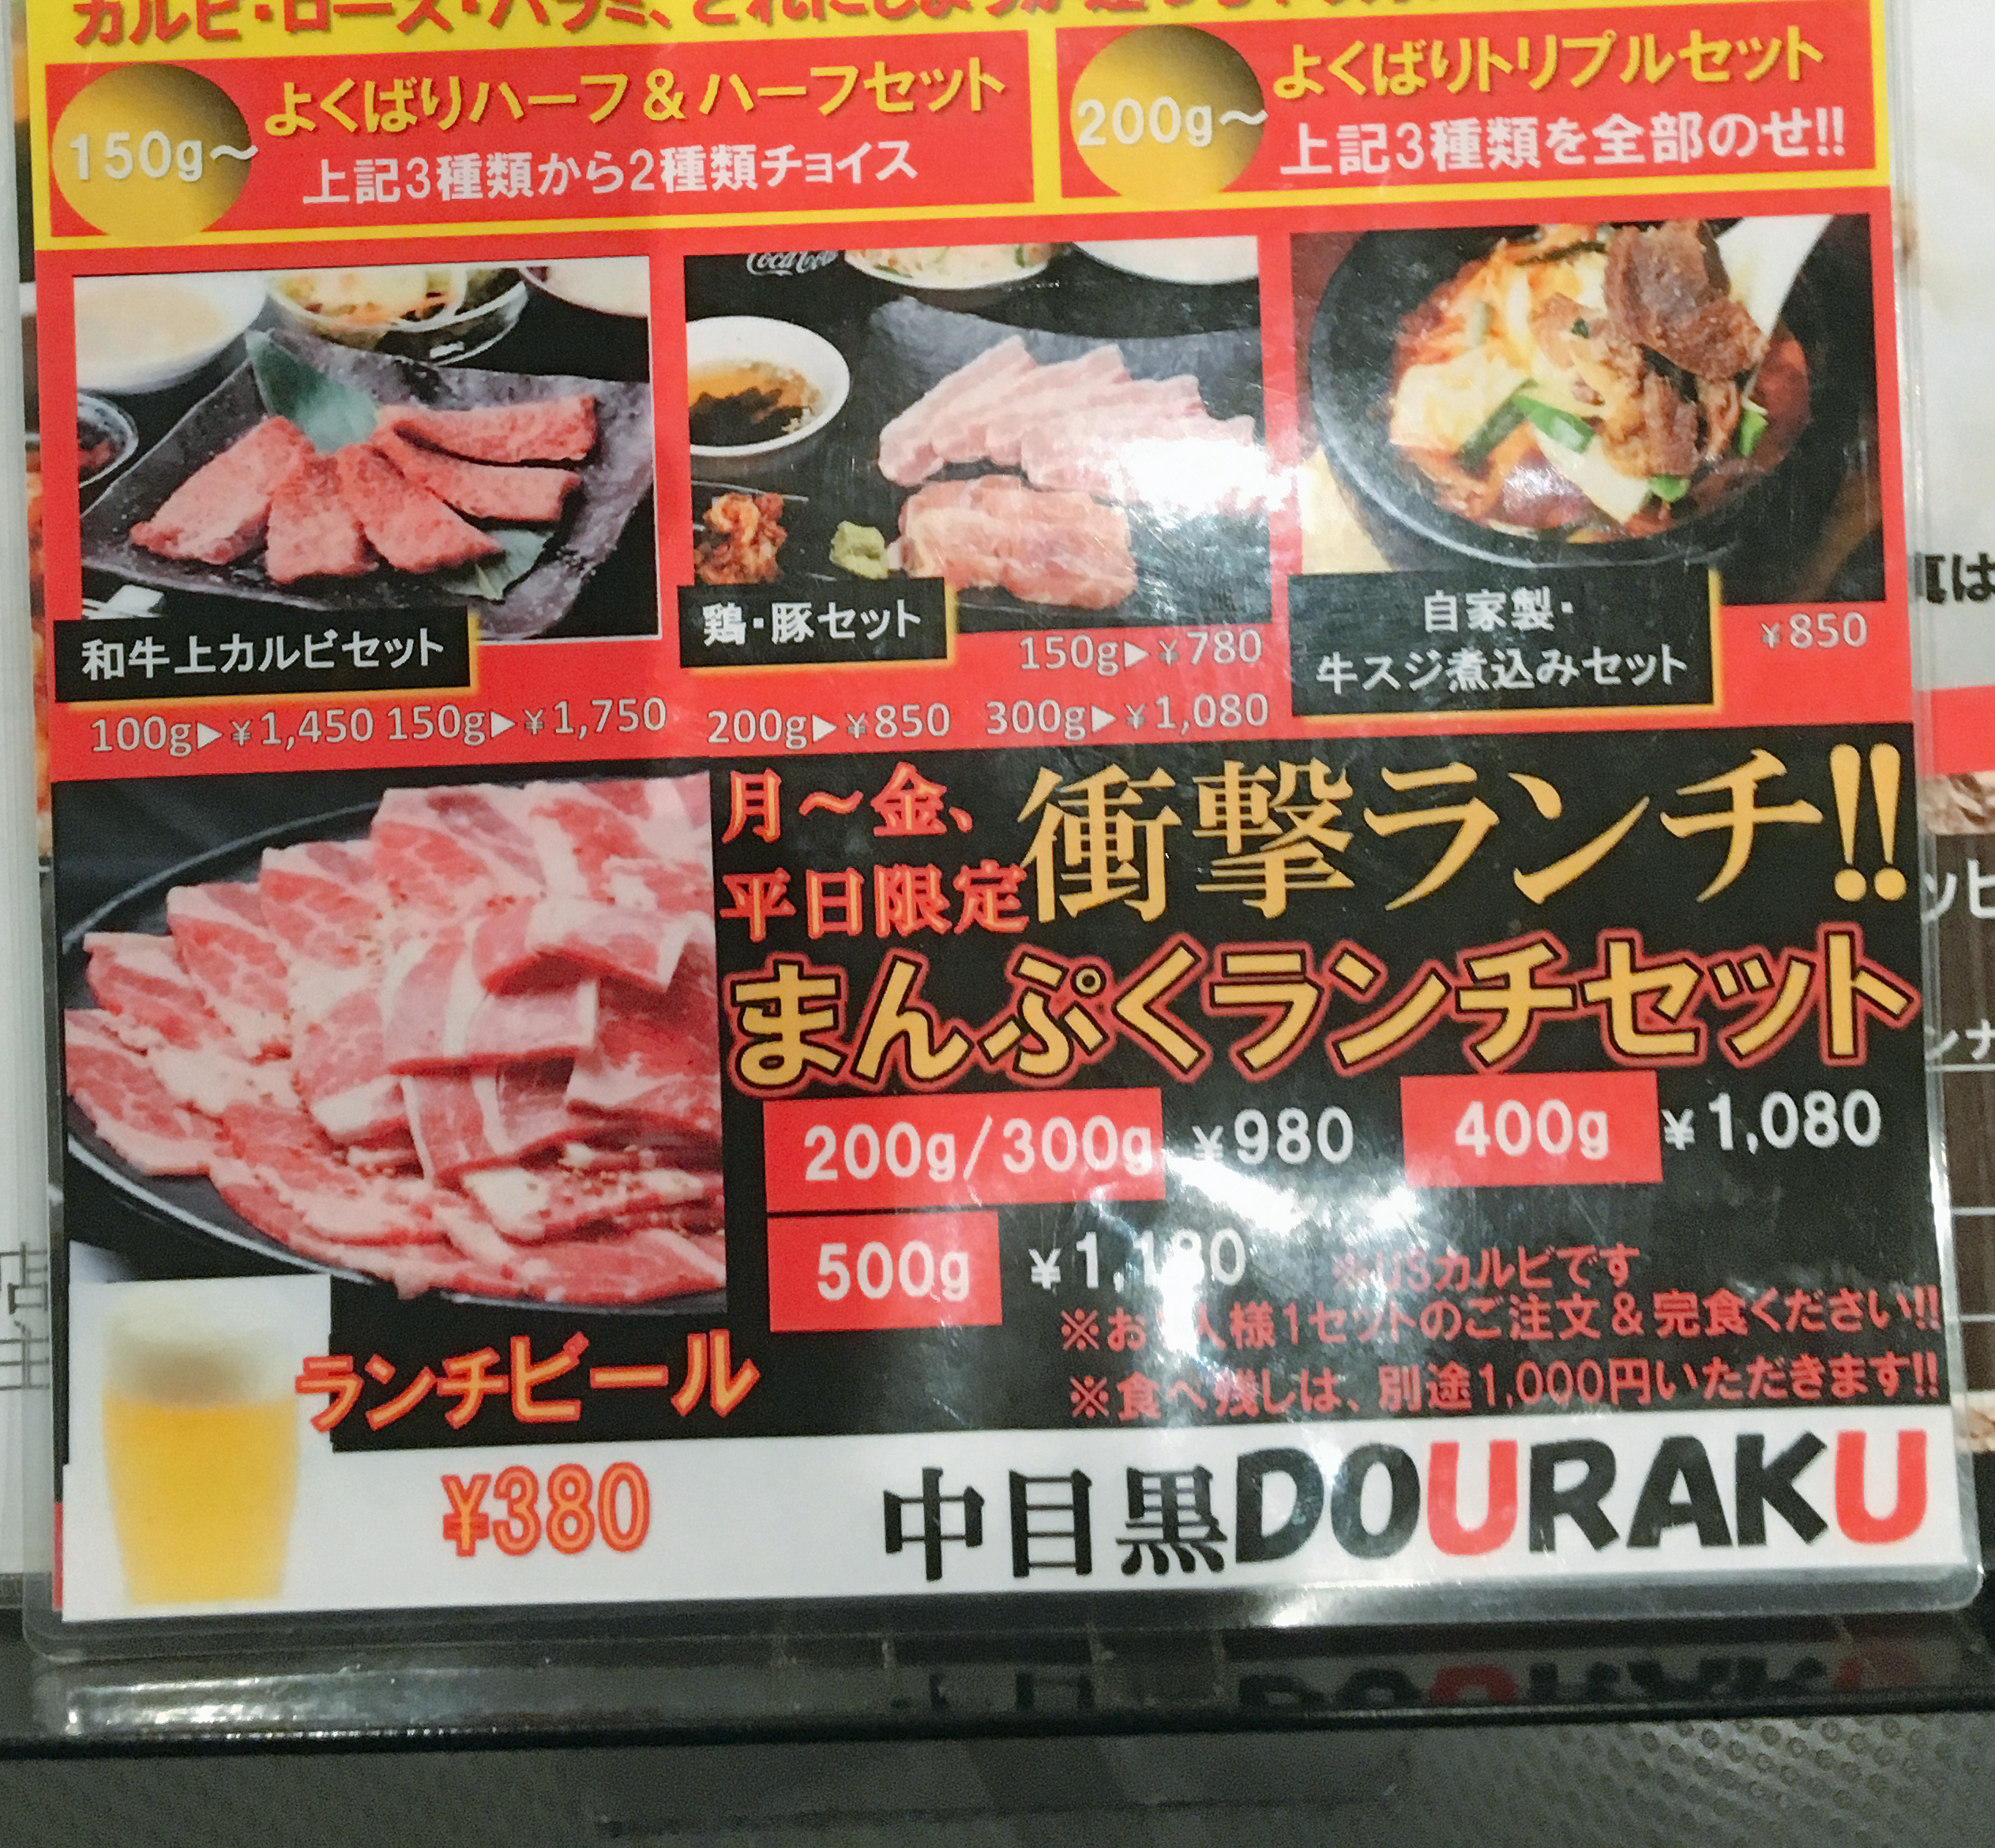 食べ放題よりもお得かも 肉500グラム1180円 焼肉douraku のランチセットのコスパがかなり高い 東京 中目黒 ロケットニュース24